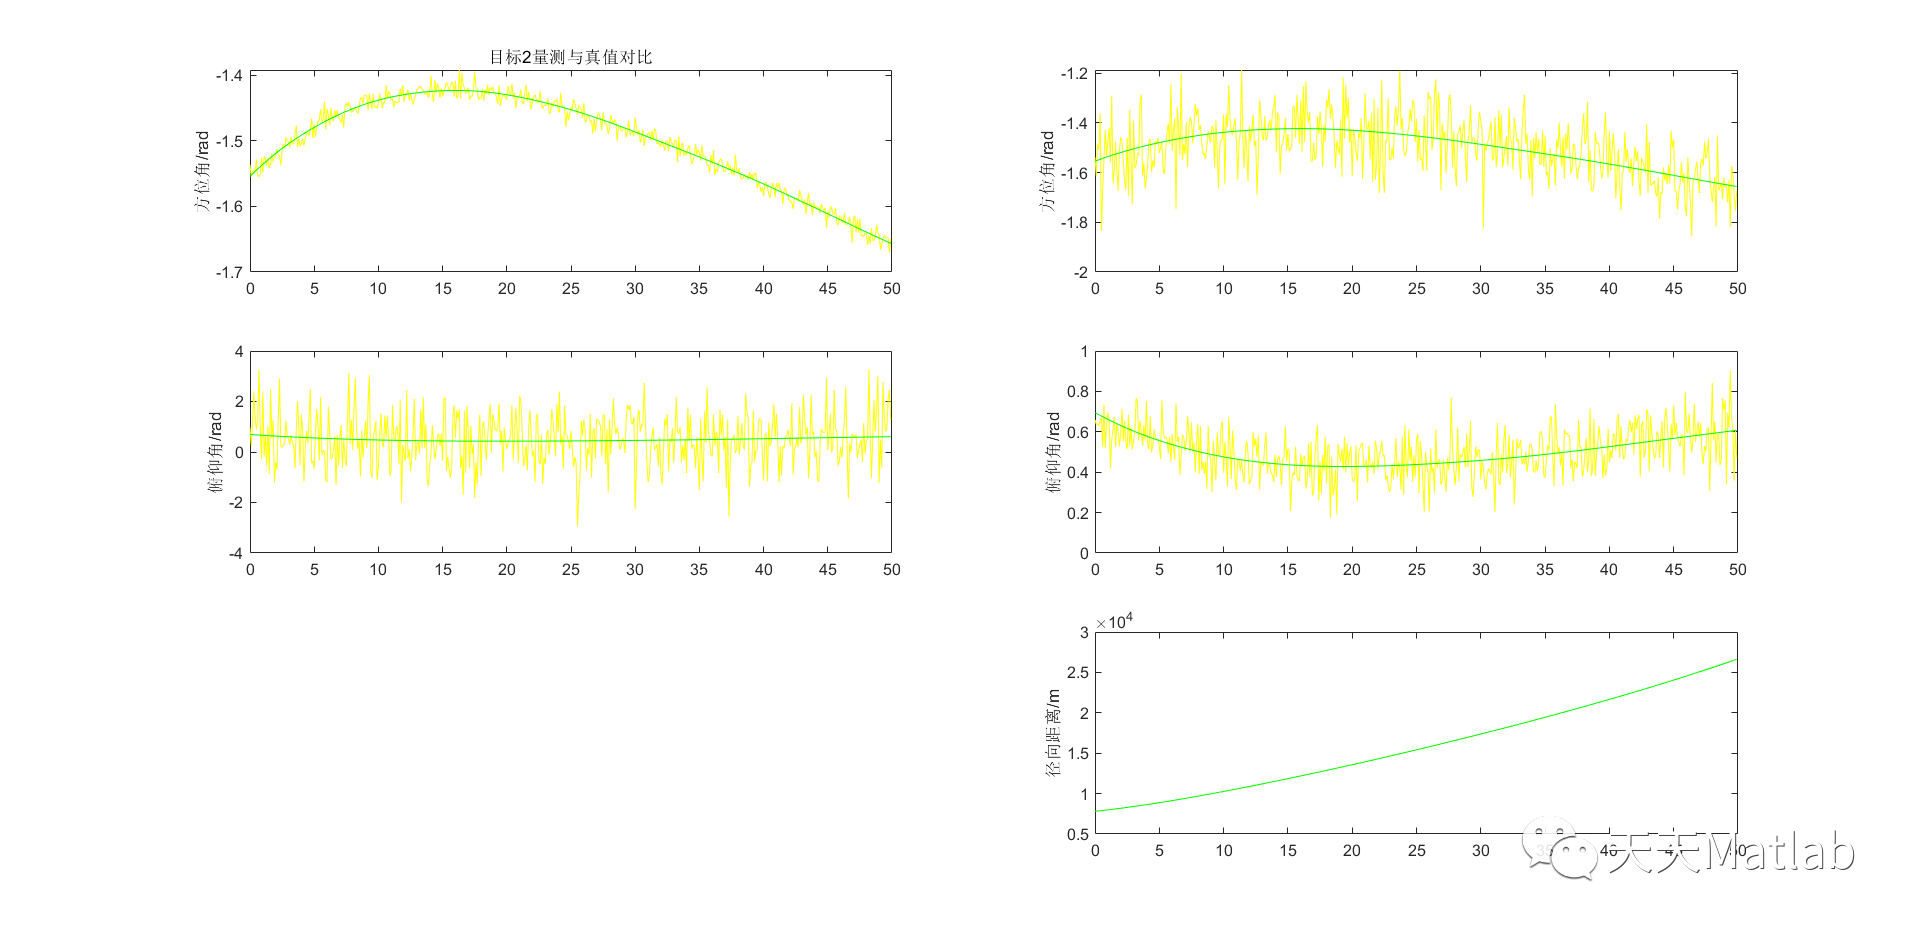 【滤波跟踪】基于EKF实现雷达与红外数据融合附matlab程序_方差_06